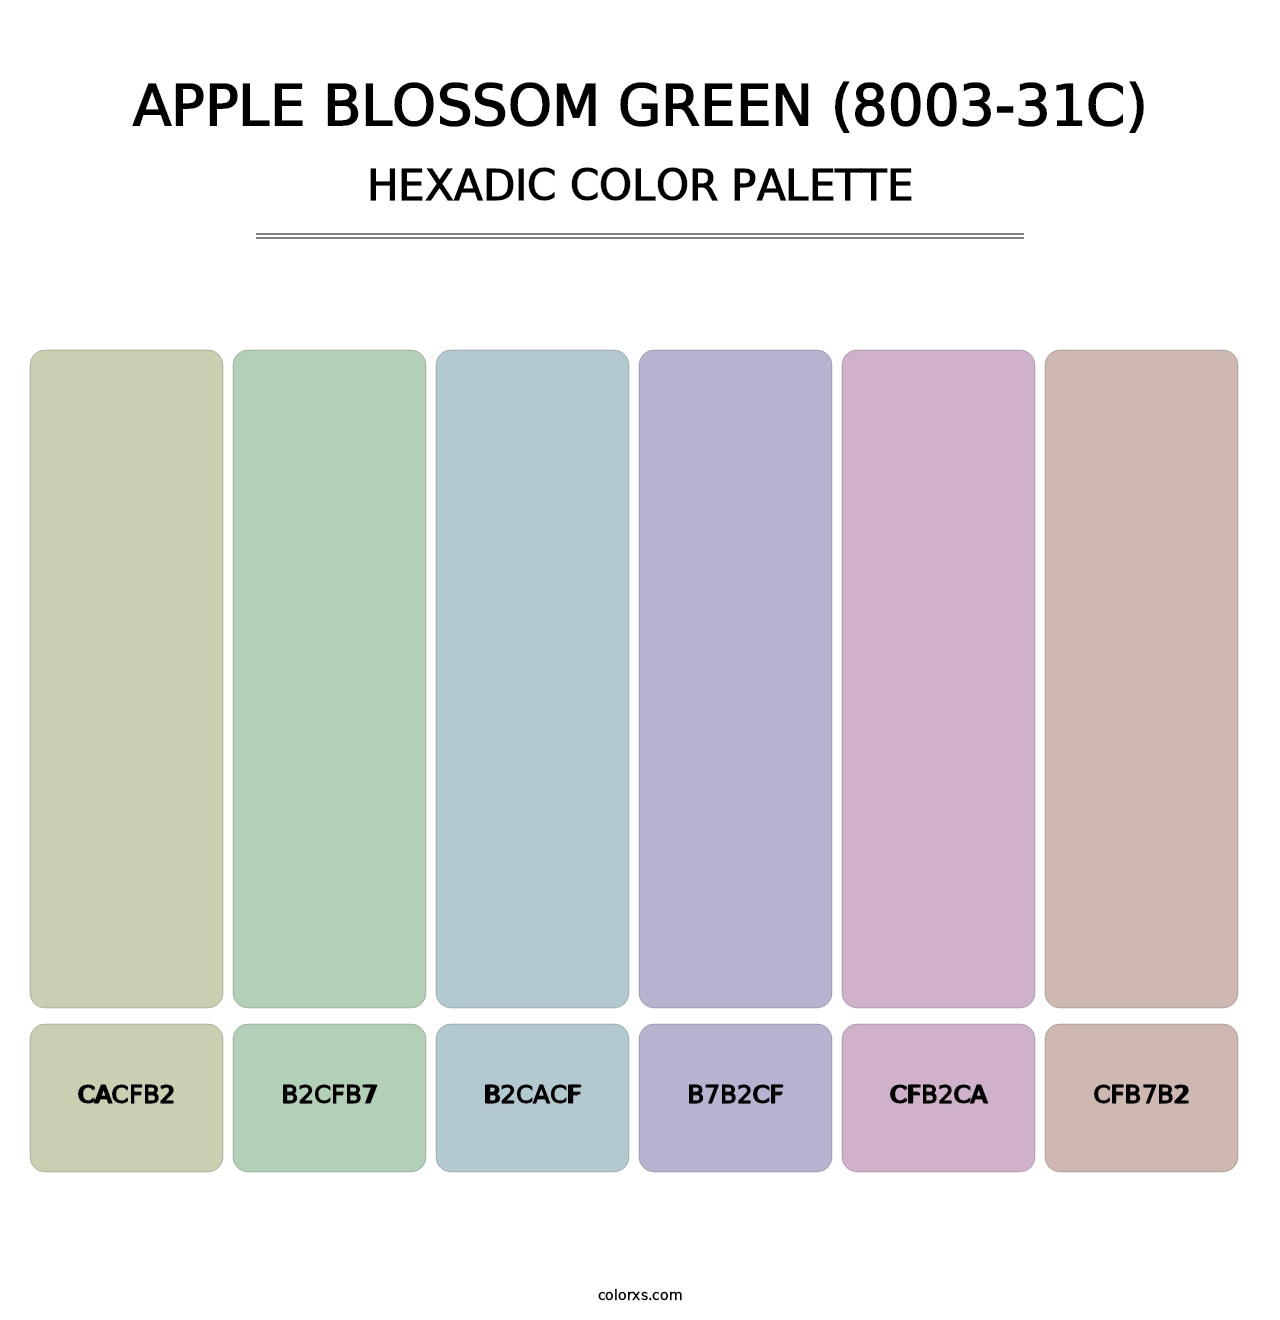 Apple Blossom Green (8003-31C) - Hexadic Color Palette